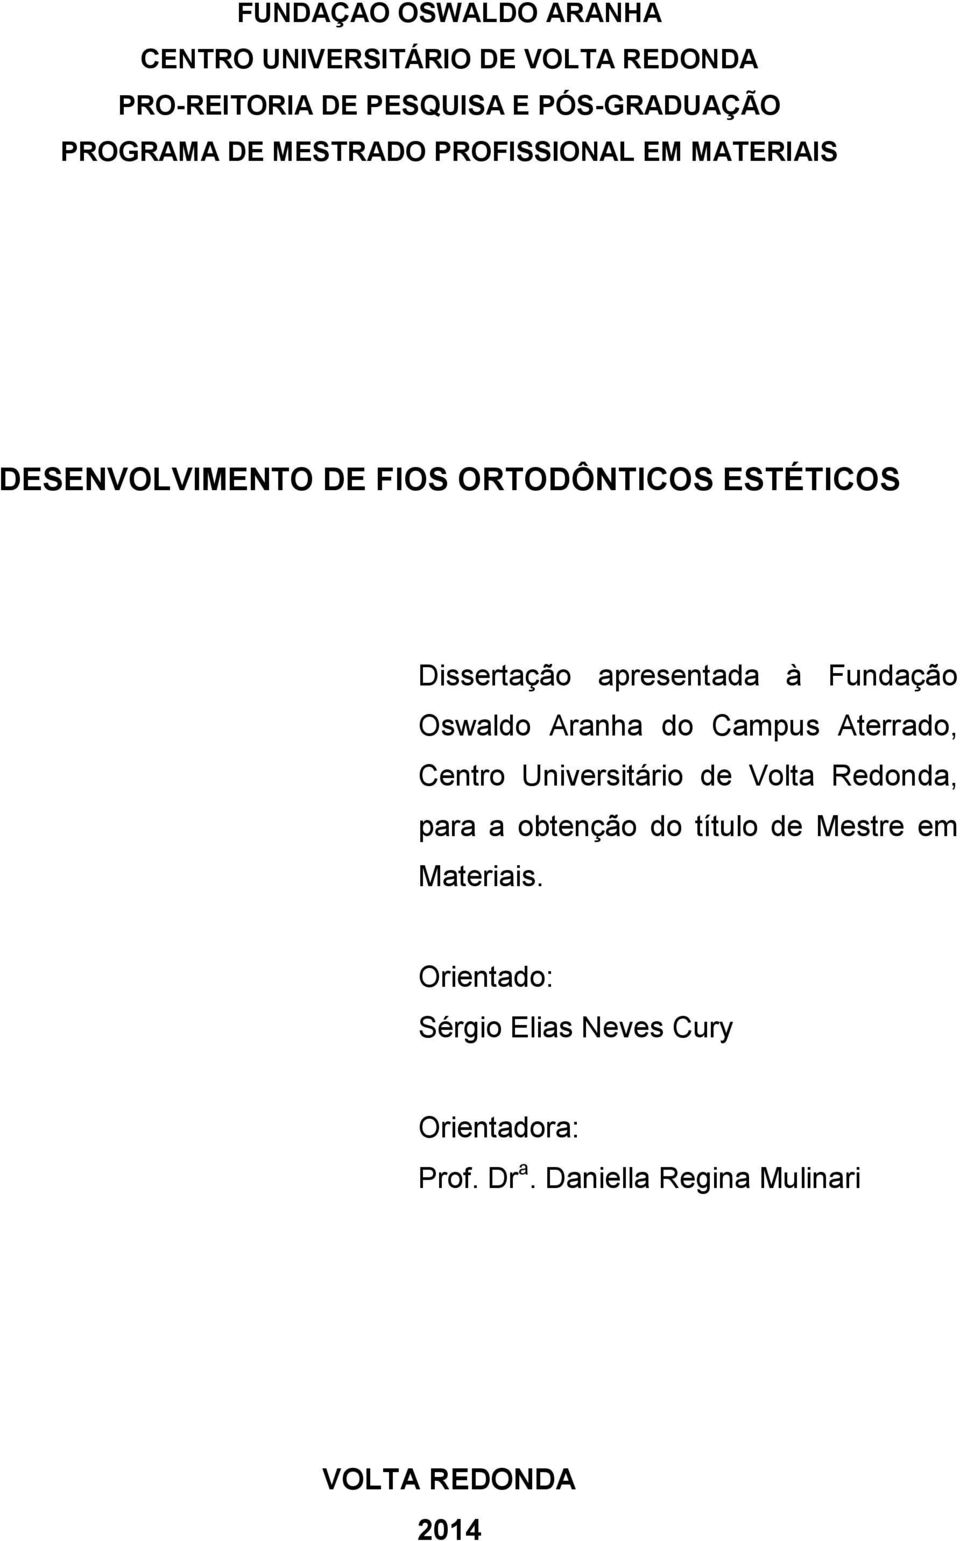 Fundação Oswaldo Aranha do Campus Aterrado, Centro Universitário de Volta Redonda, para a obtenção do título de